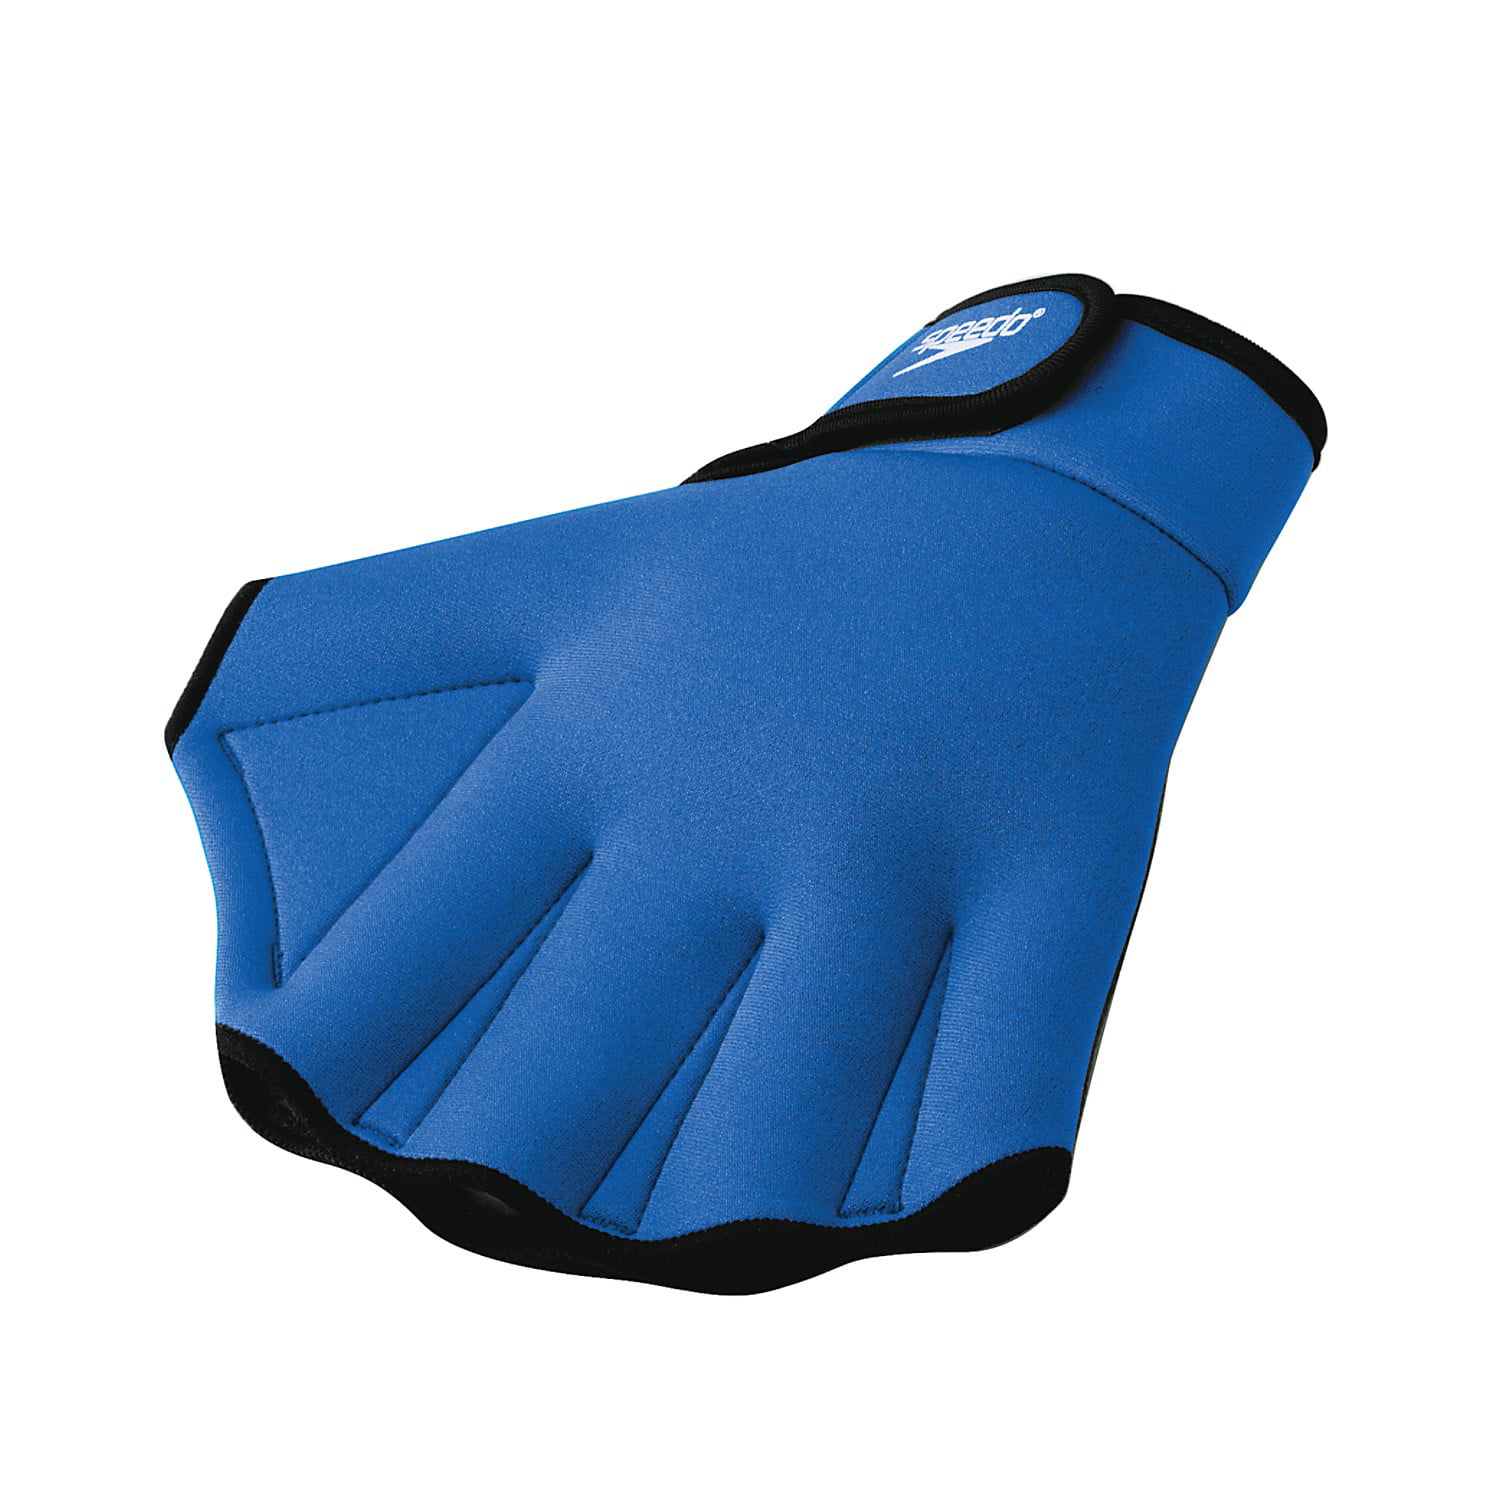 Speedo Swimming Aqua Fit Training-Exercise Swim Gloves Medium Royal 